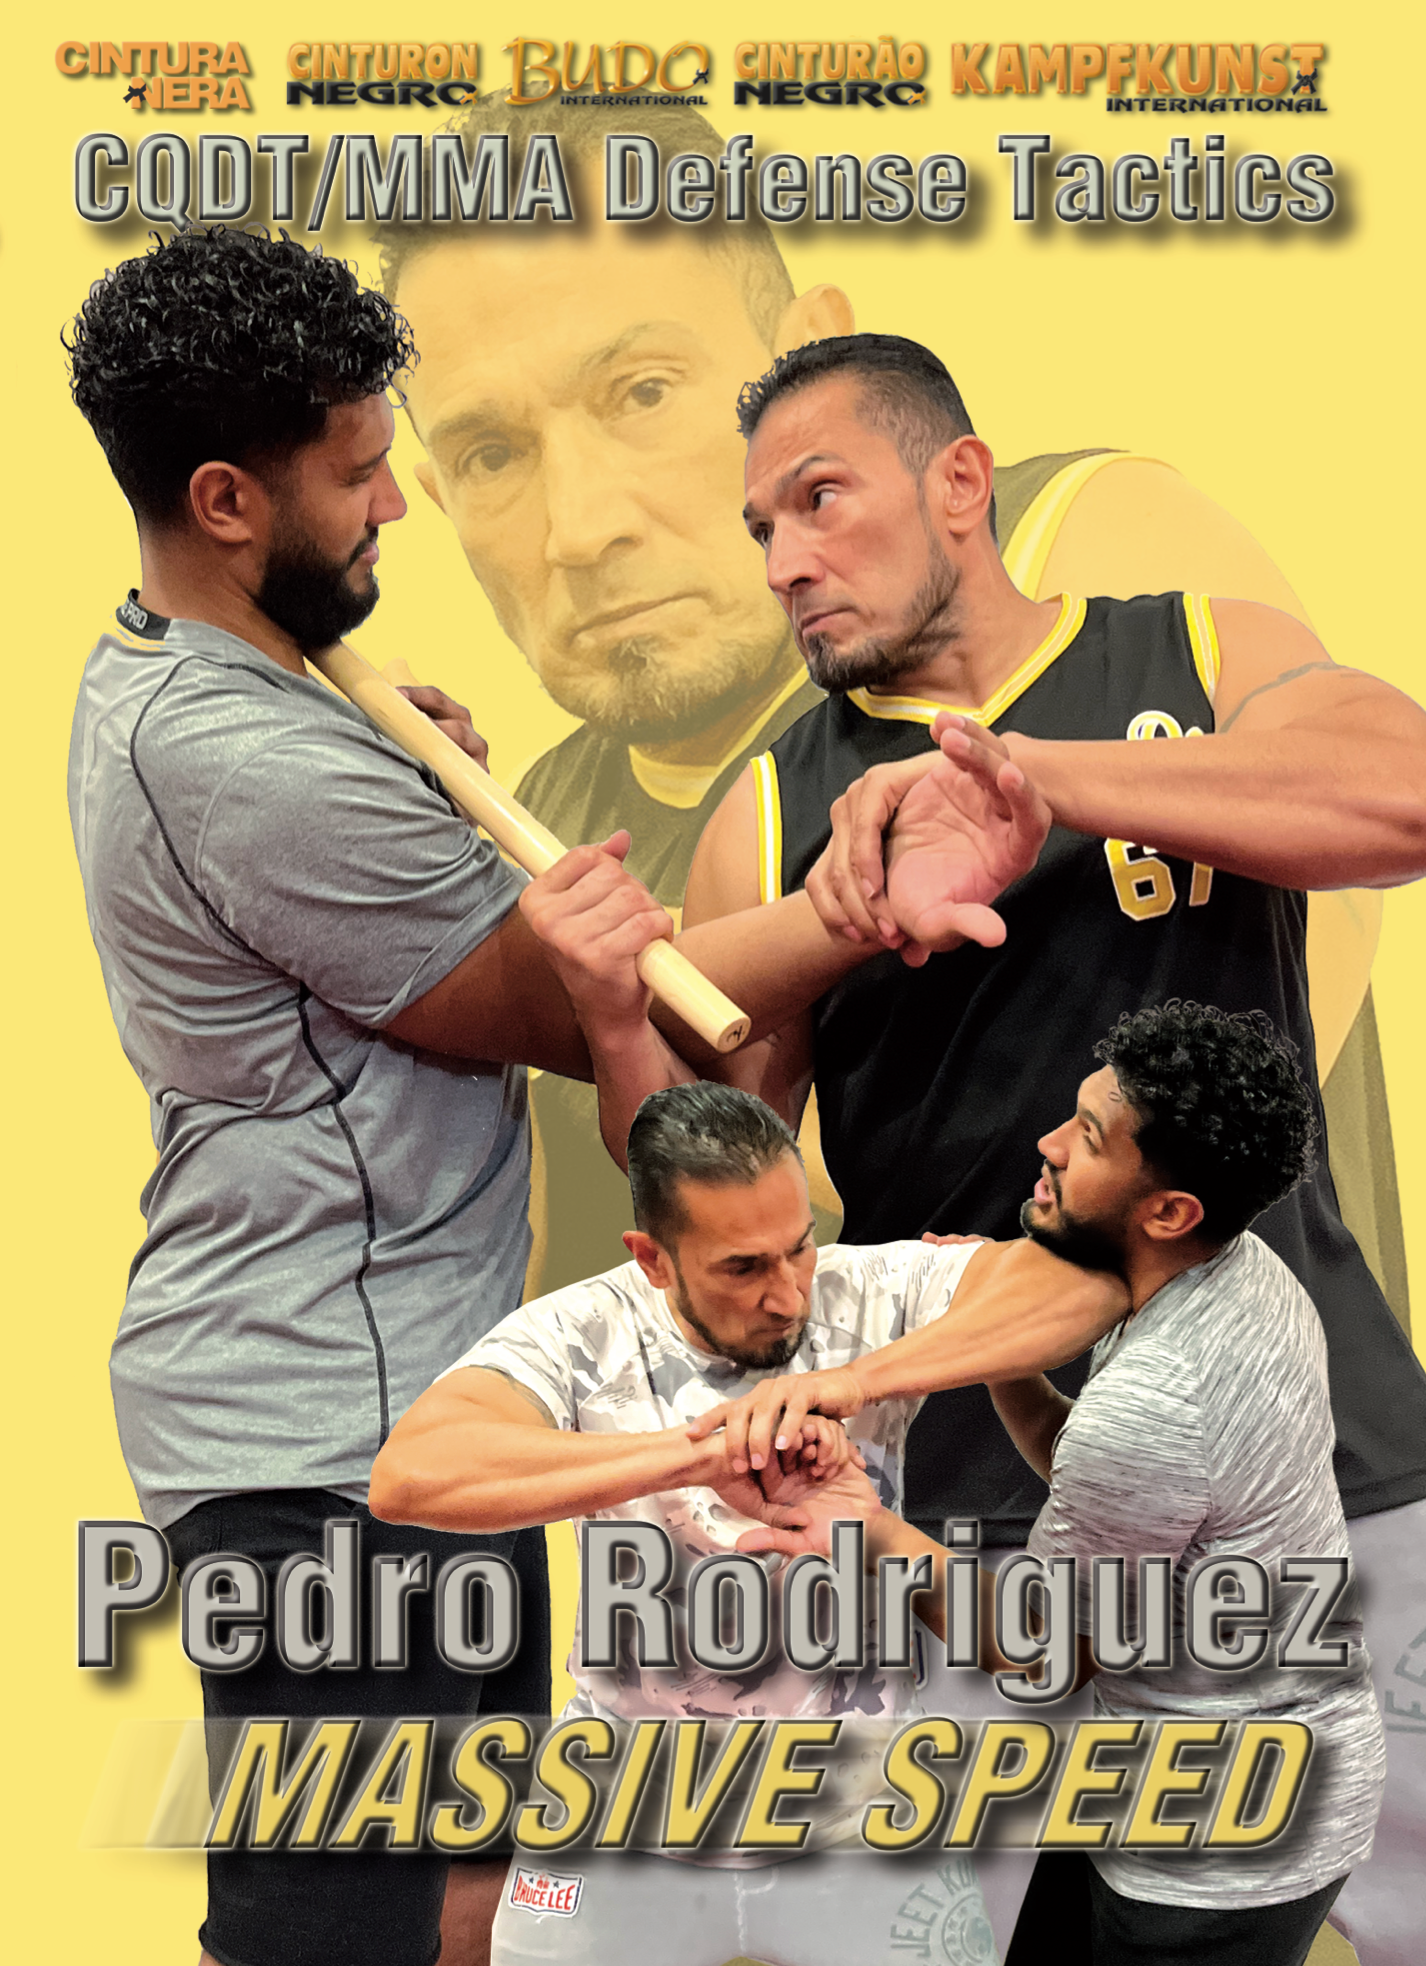 Autodefensa Práctica por Pedro Rodriguez (On Demand)